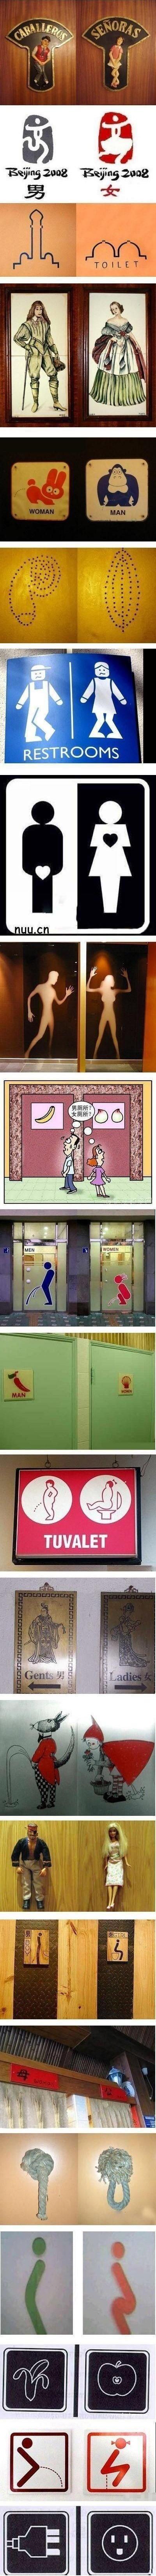 세계 각국의 화장실 남녀 표시